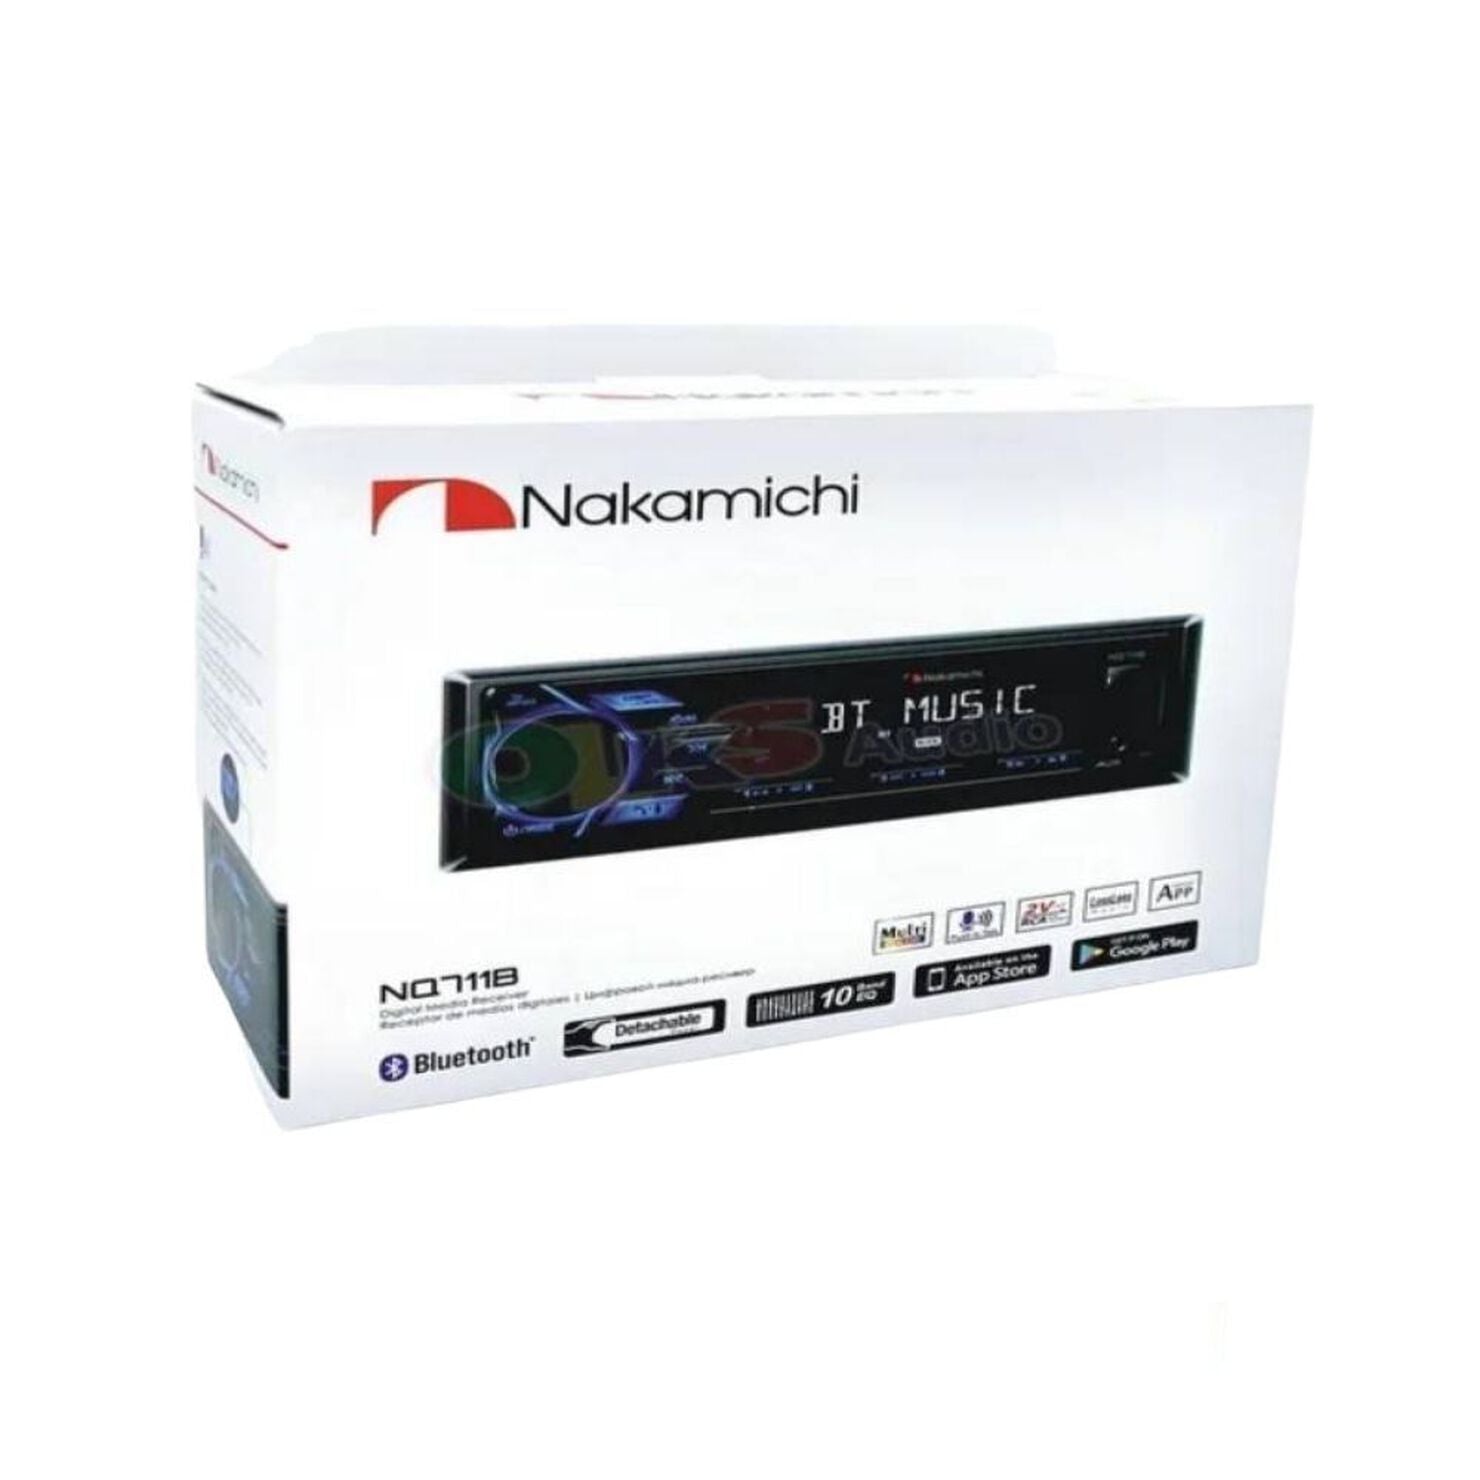 Radio para carro Nakamichi NQ711B: Económico y tecnológico